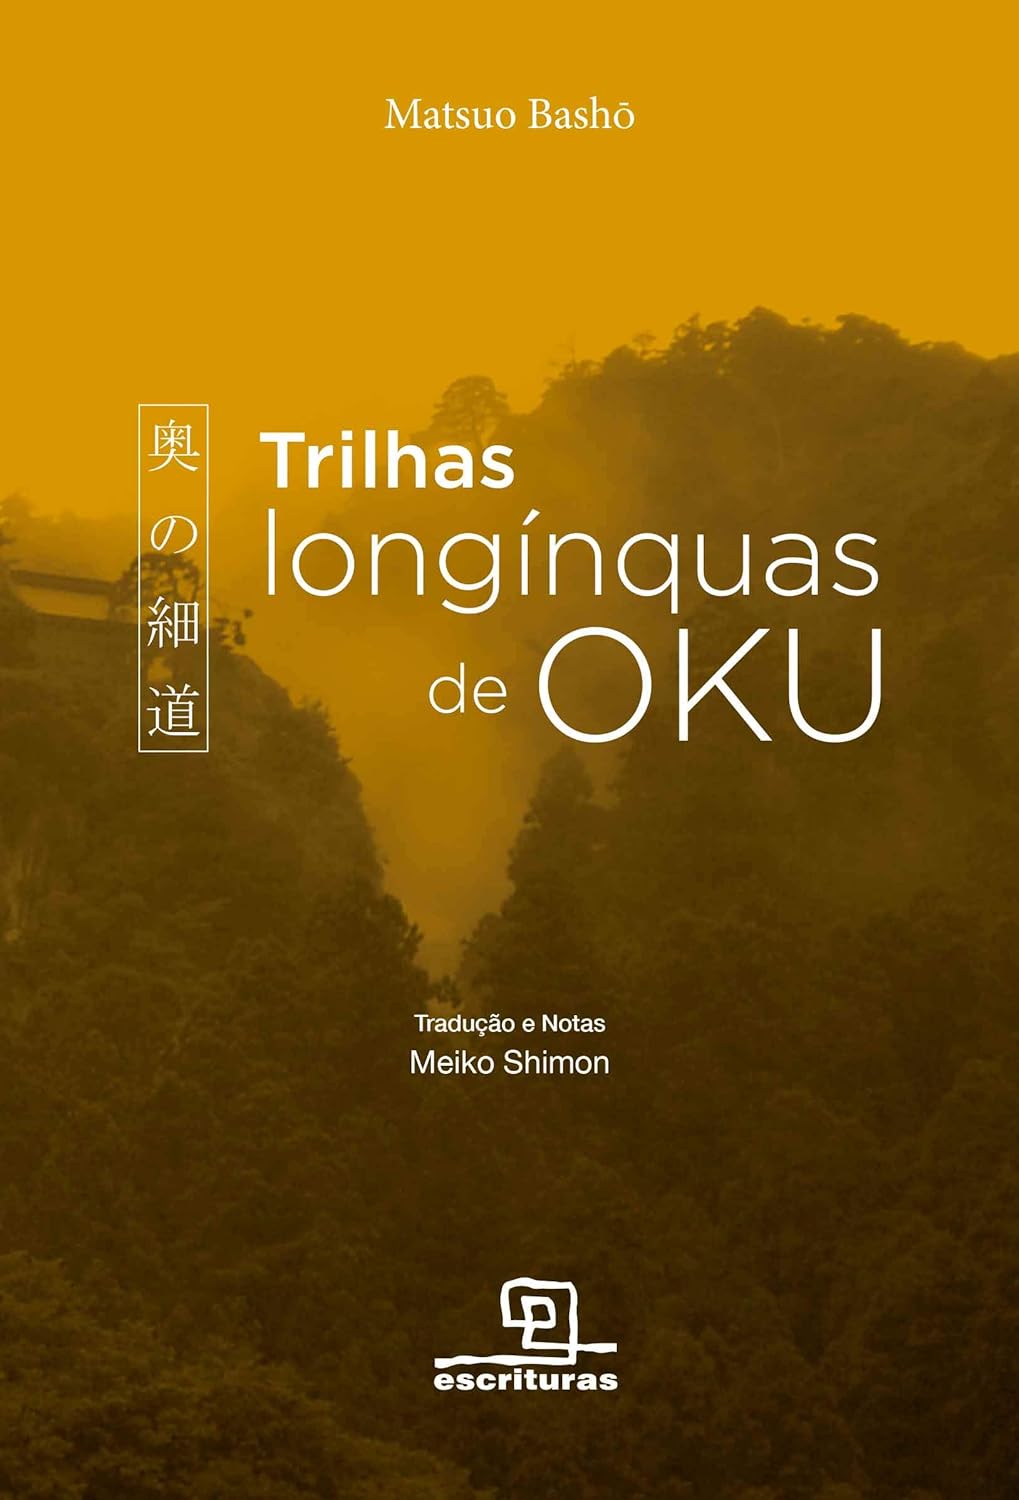 Trilhas longínguas de Oku